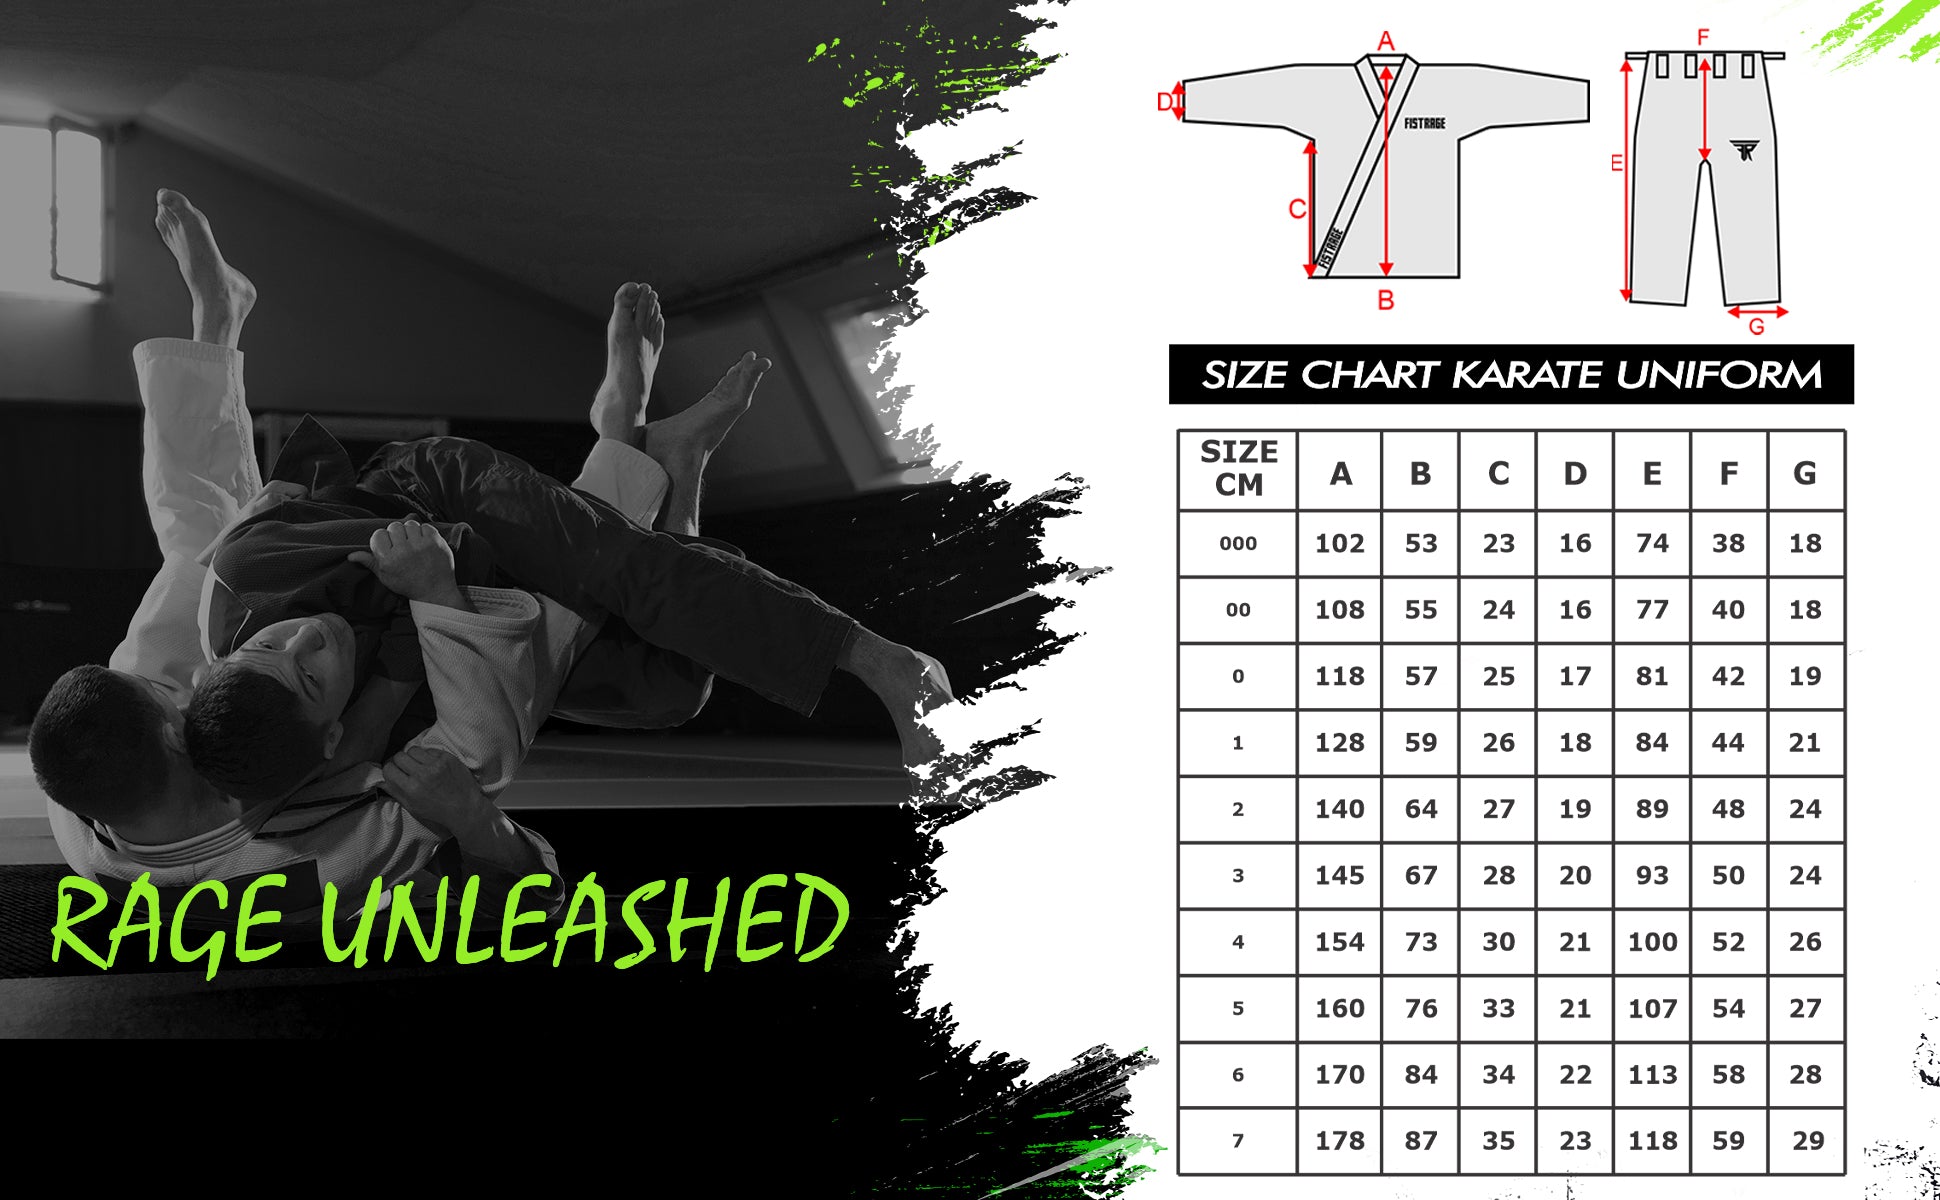 FISTRAGE Karate Uniform size chart